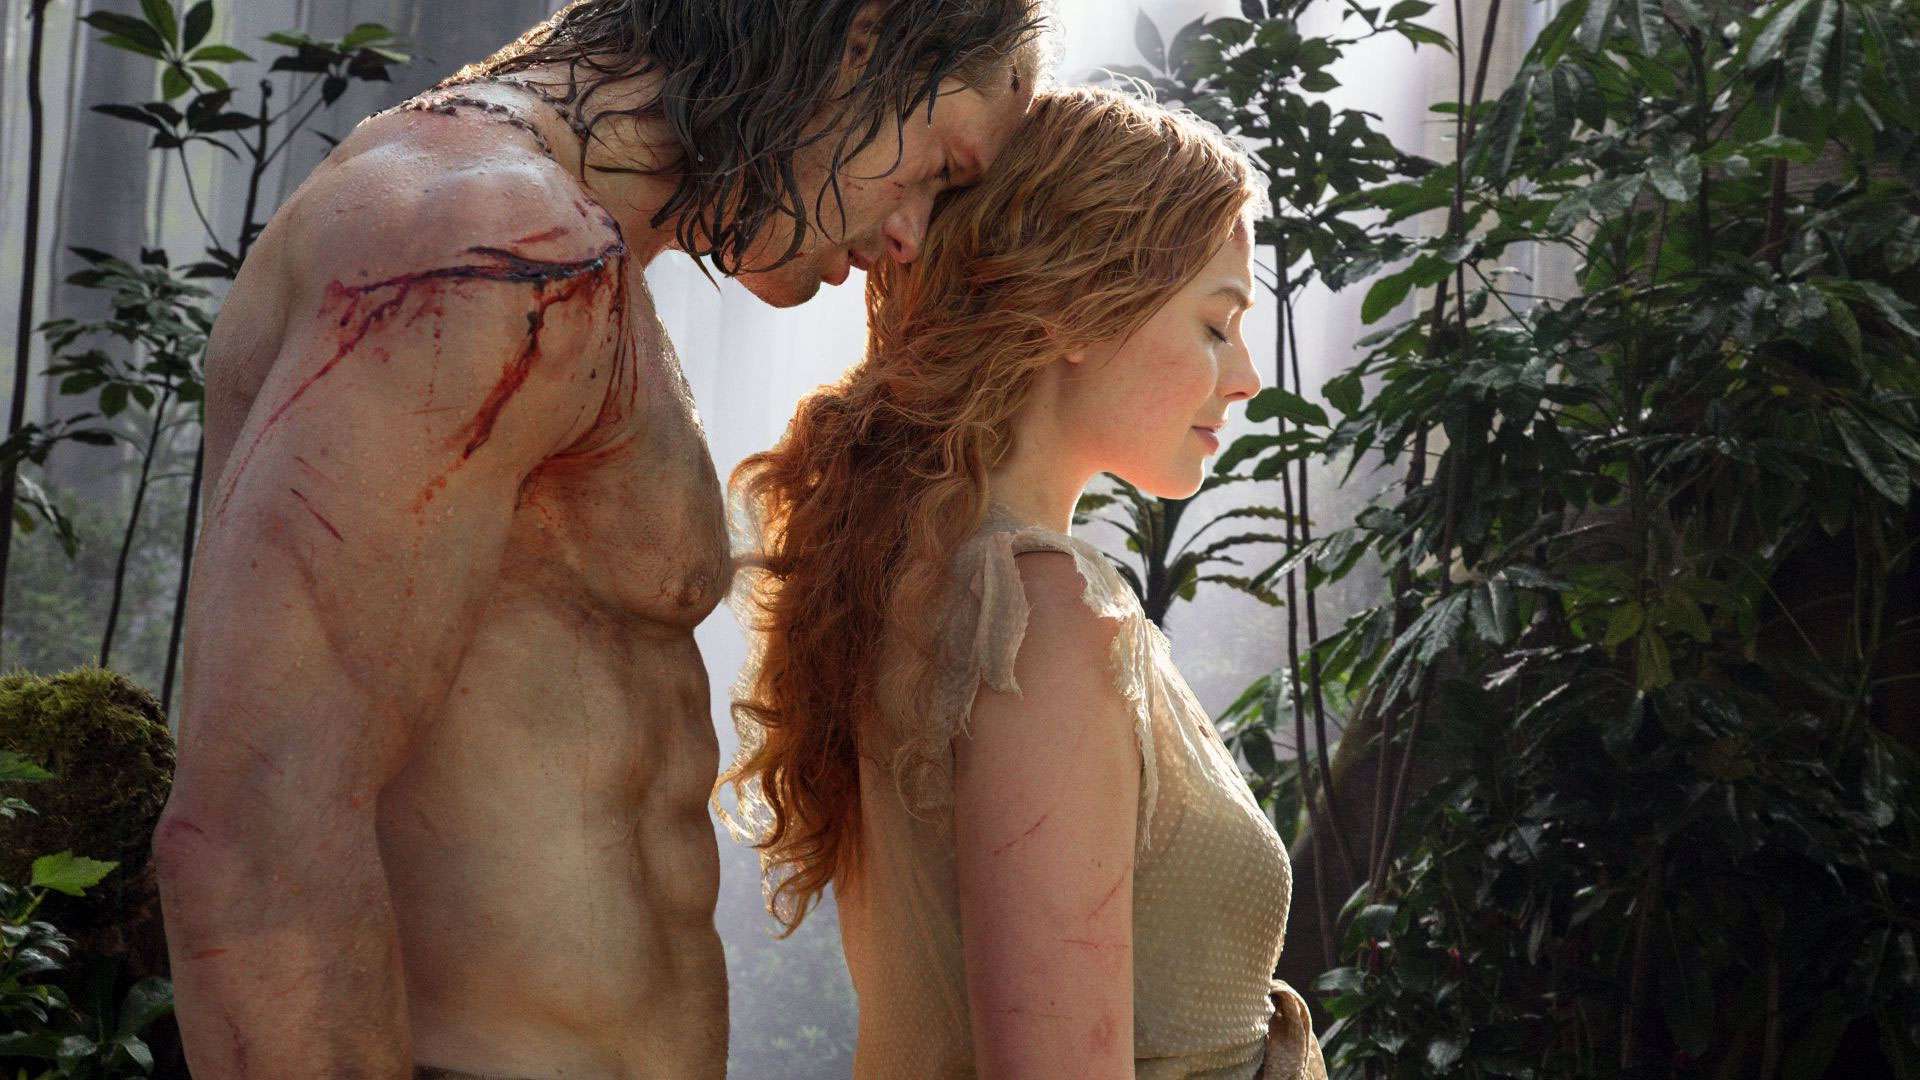 Tarzan couple